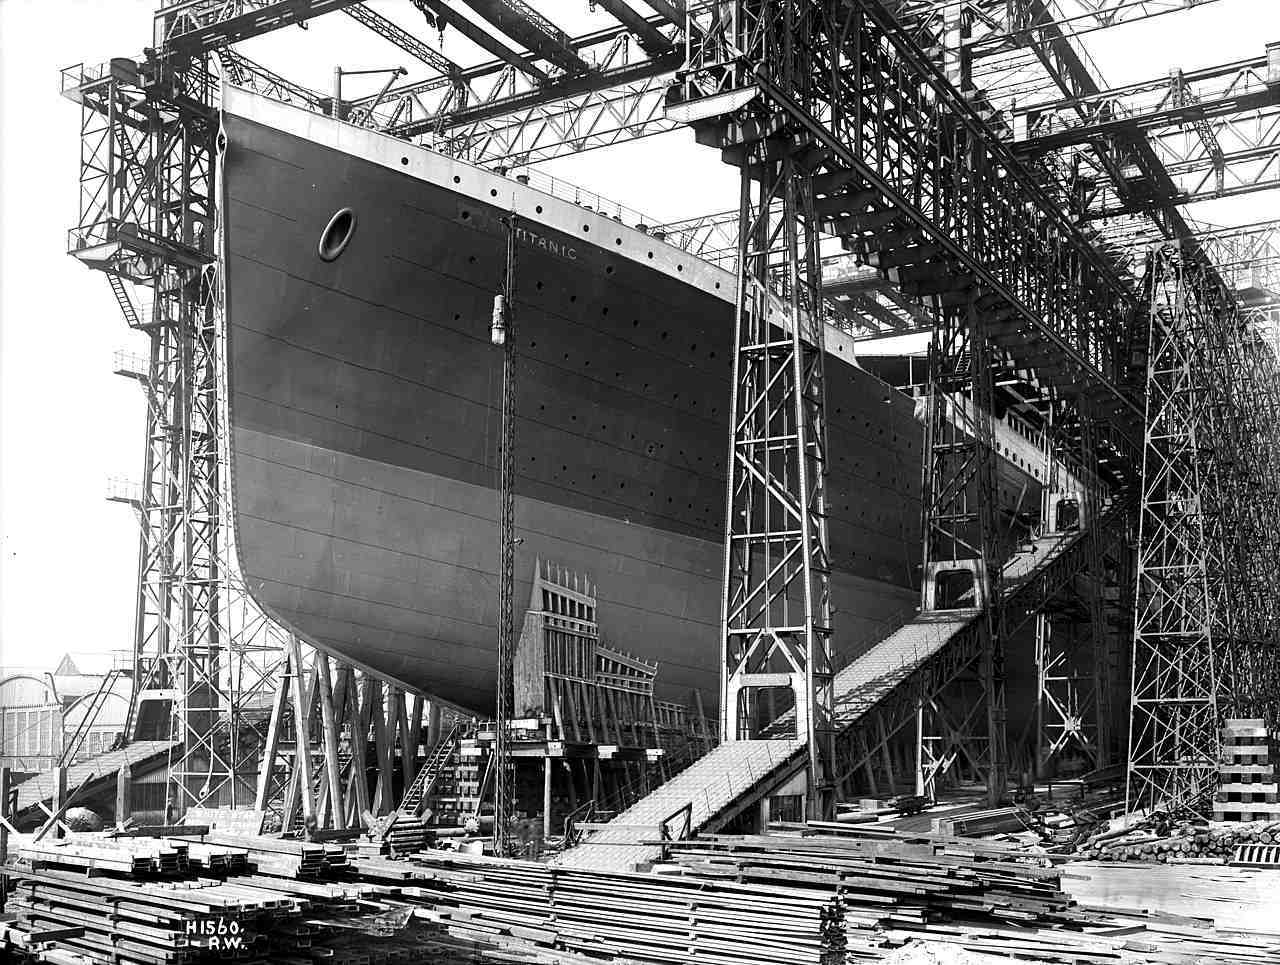 Rahasia gelap dan beberapa fakta yang tidak banyak diketahui di balik bencana Titanic 2